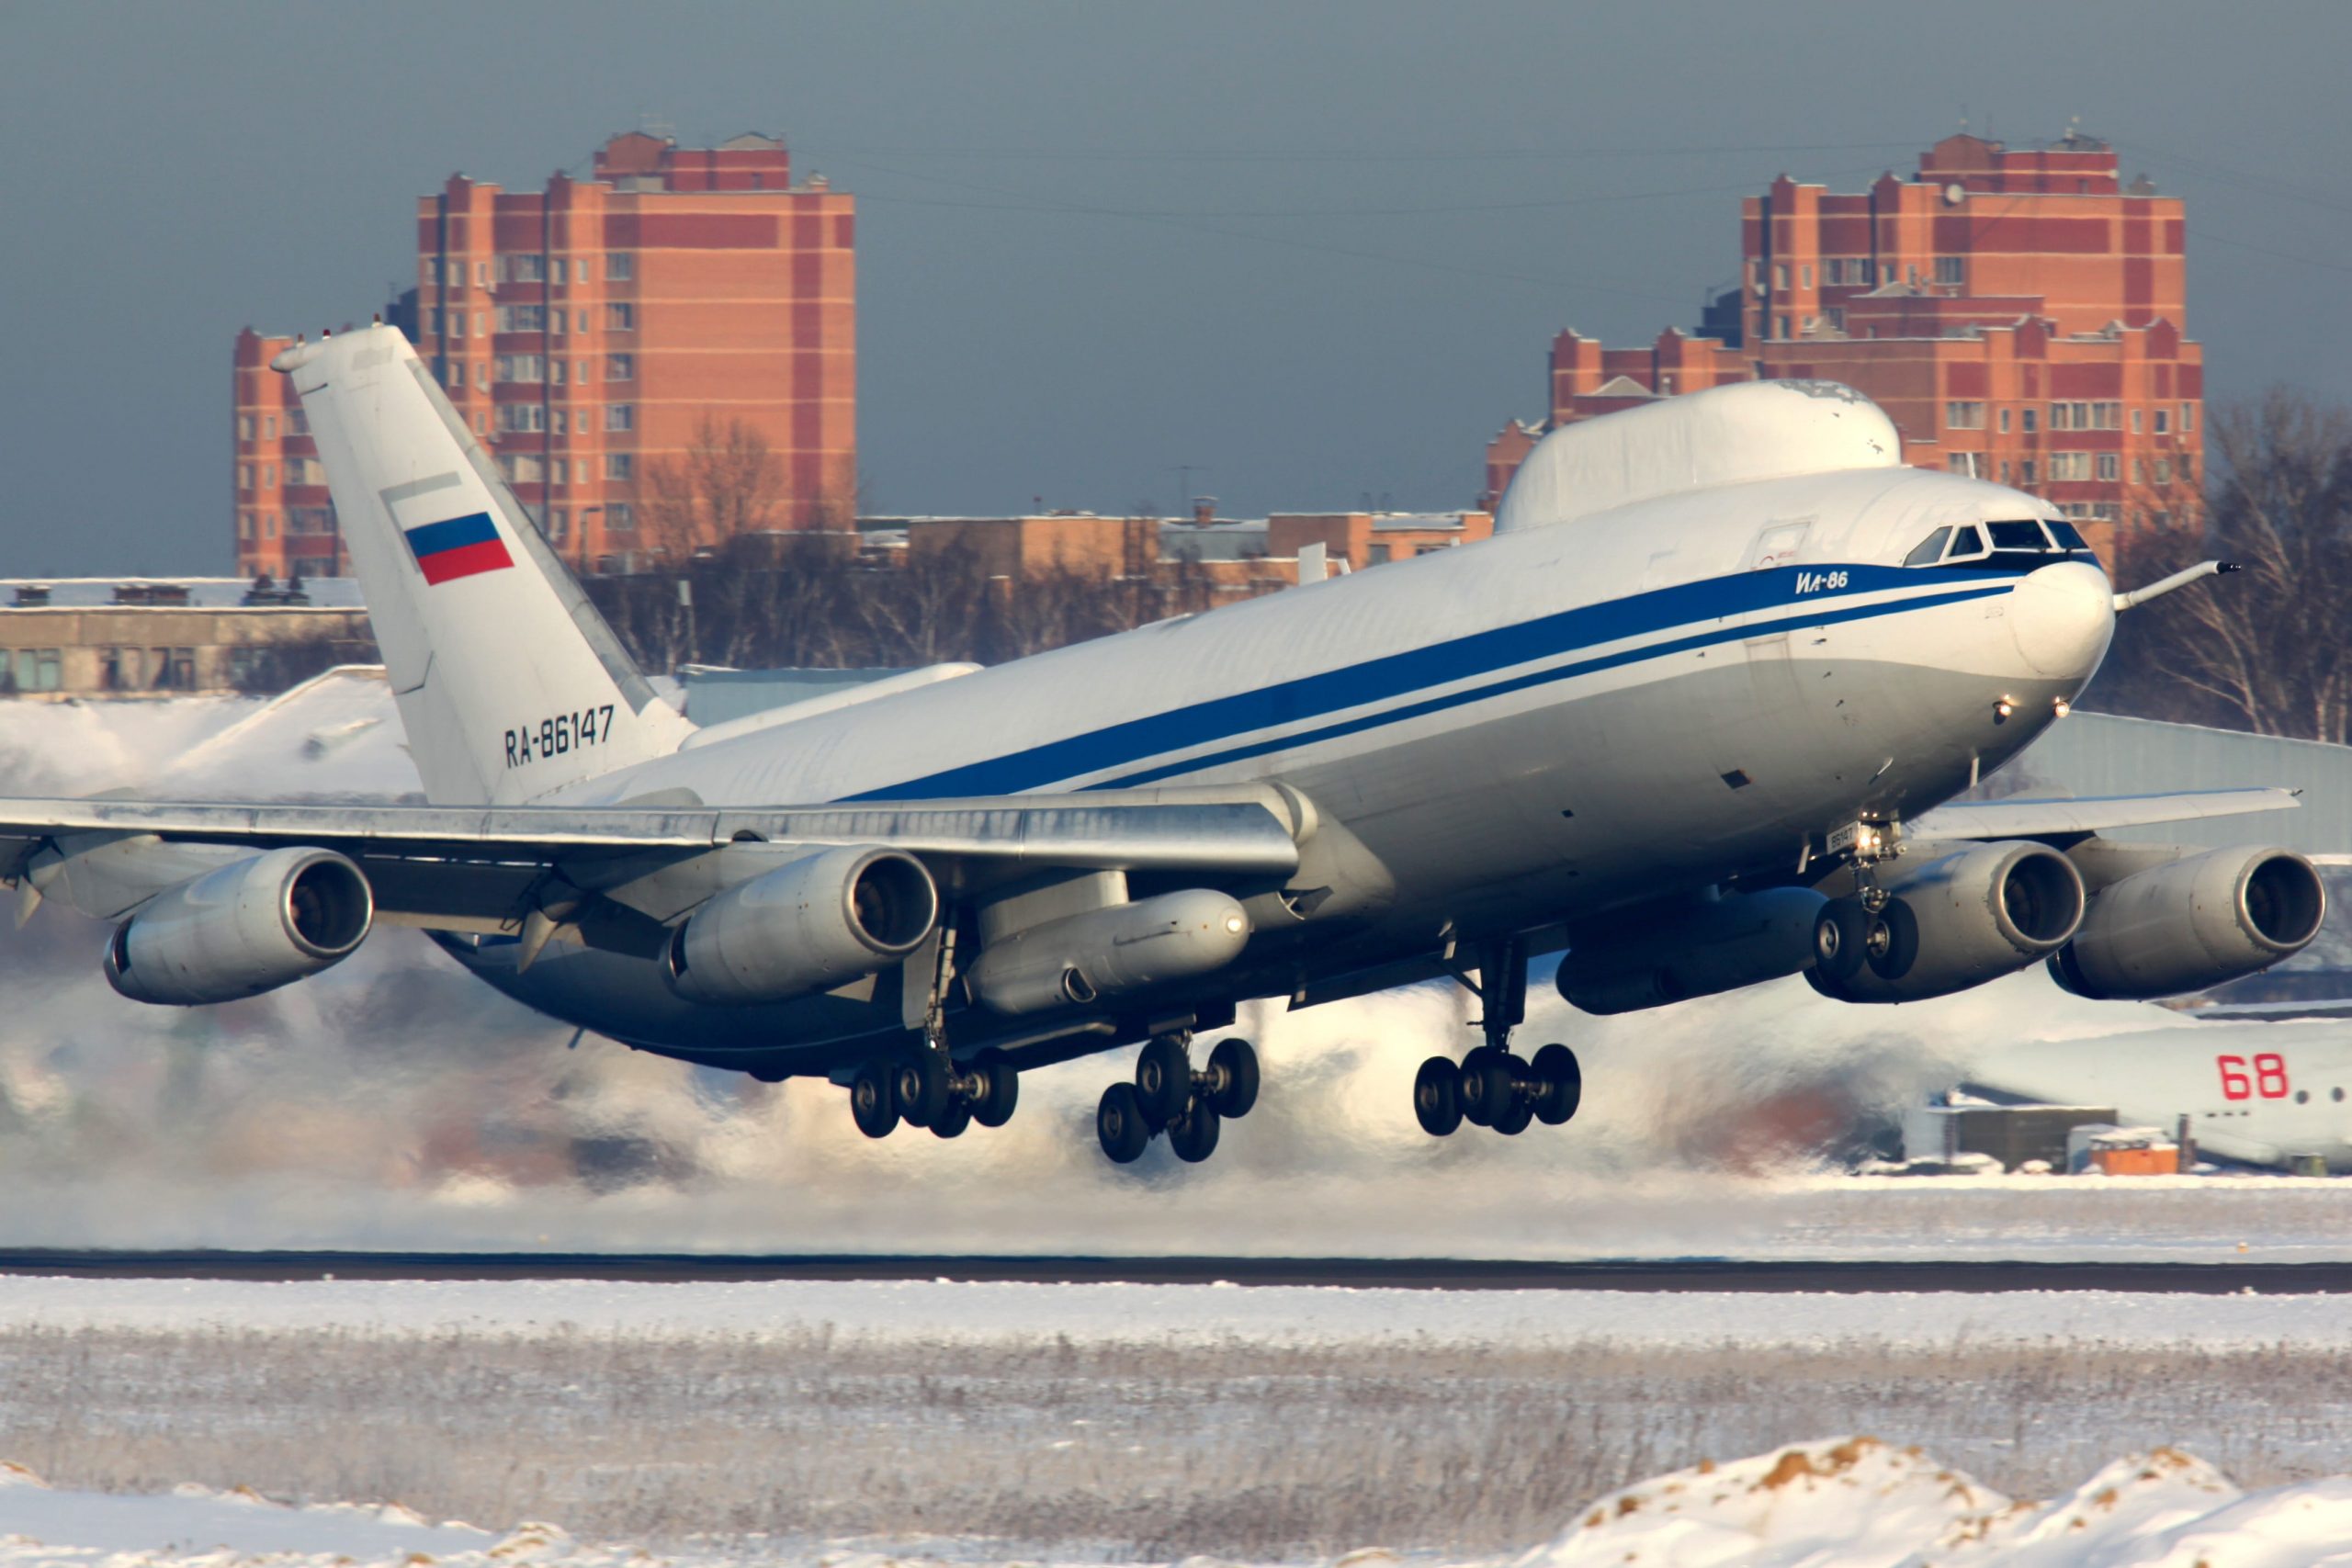 Ilyushin Il-80